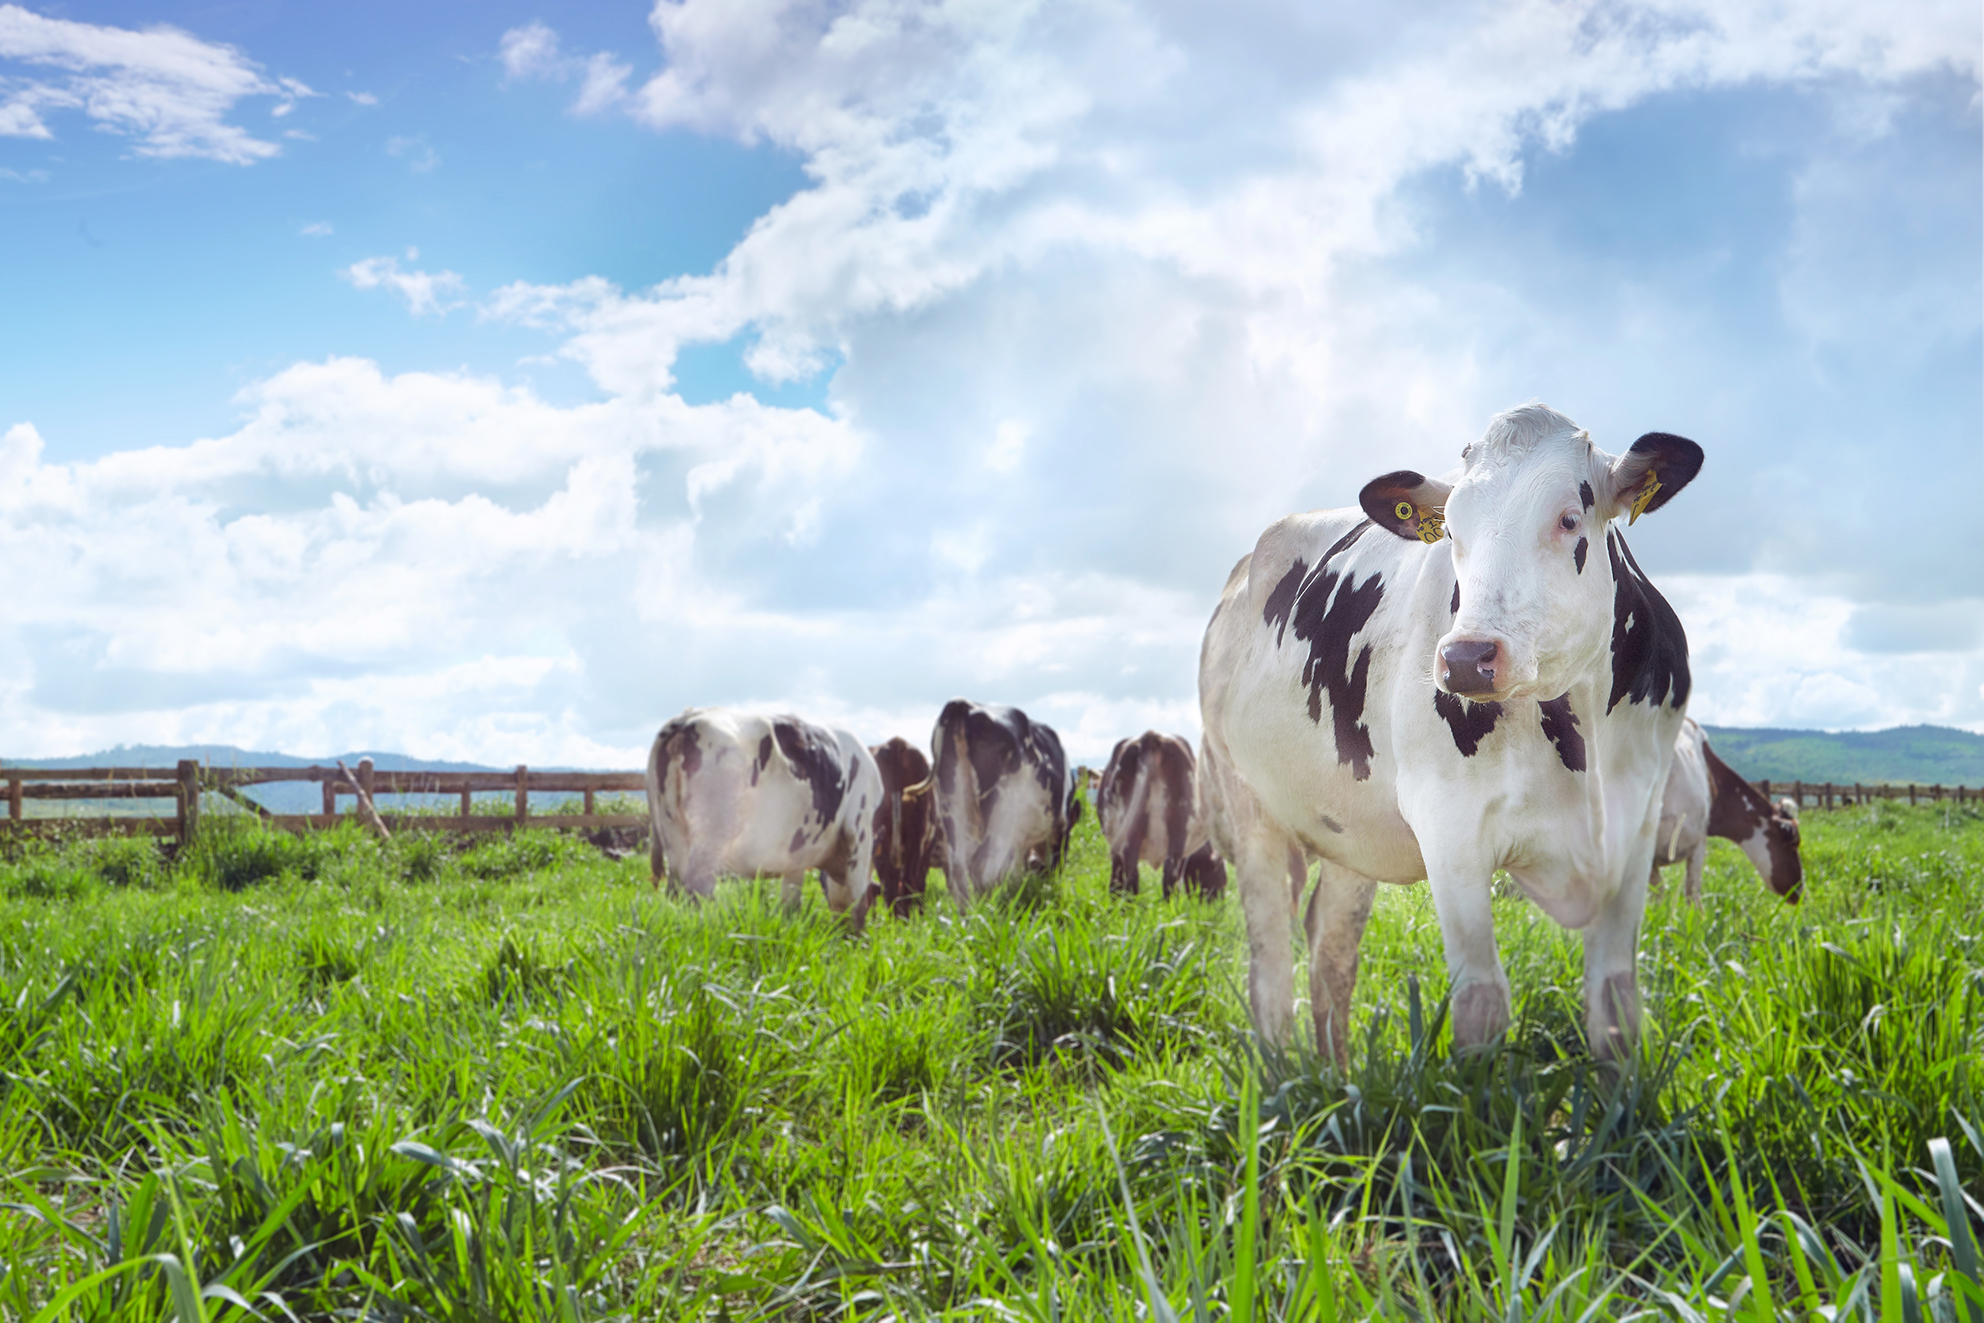 Chăn nuôi bò sữa đang trở thành một lĩnh vực được nhiều người quan tâm, vì vậy hãy nhanh chóng tìm hiểu và bắt đầu kinh doanh ngay những chú bò sữa của riêng mình. Chăn nuôi bò sữa được xem là một công việc ổn định, tiềm năng lớn trong tương lai và mang lại nhiều lợi ích cho cả địa phương cũng như cộng đồng.